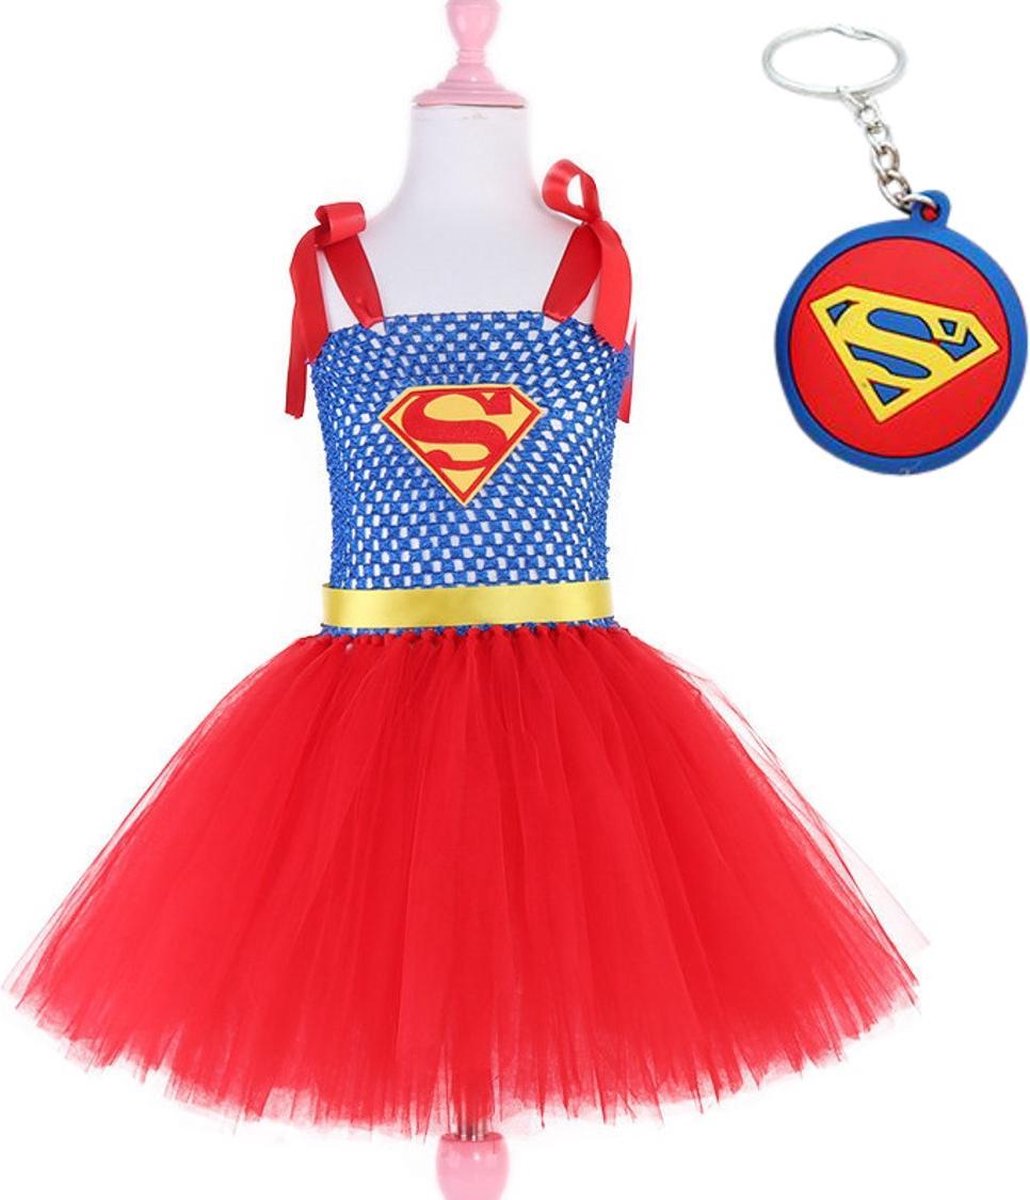 Superman pak kostuum super girl superheld tutu prinsessen jurk meisje 128-134 (130) + GRATIS tas/sleutel hanger verkleedkleding